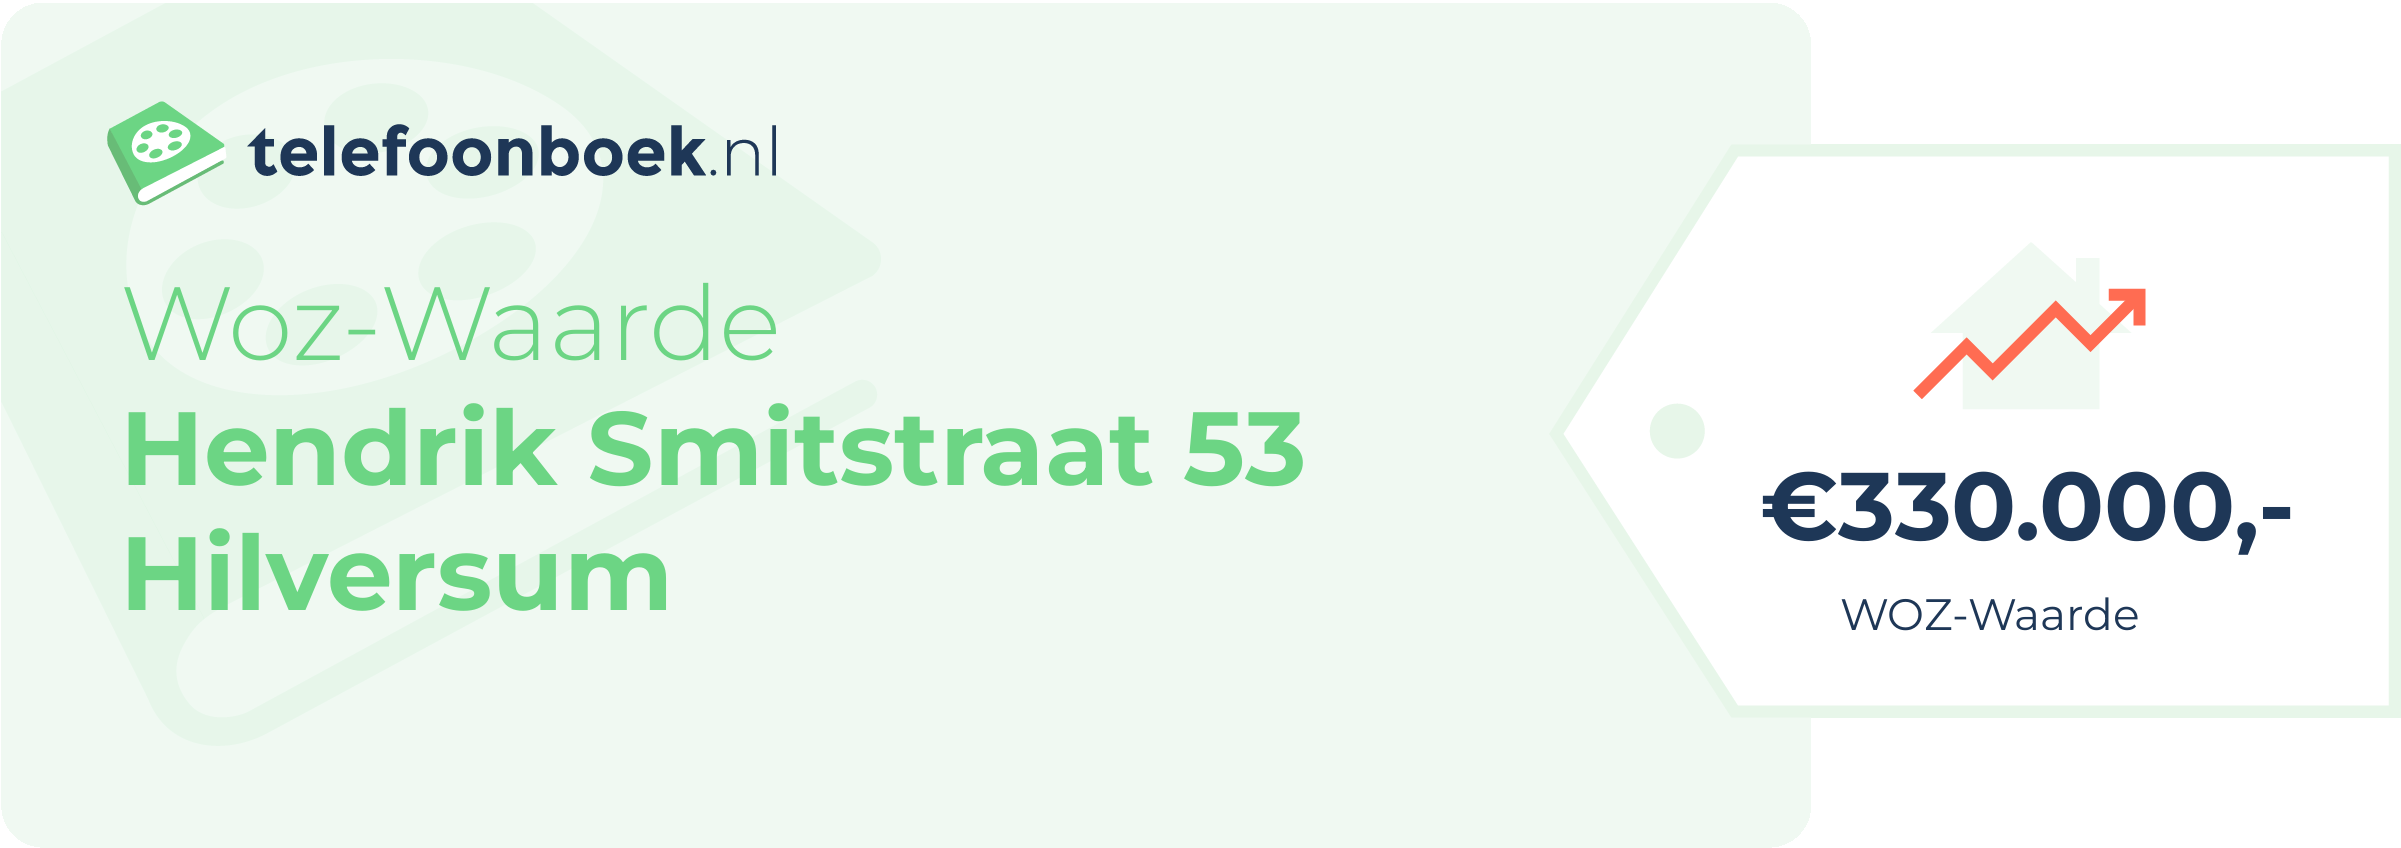 WOZ-waarde Hendrik Smitstraat 53 Hilversum